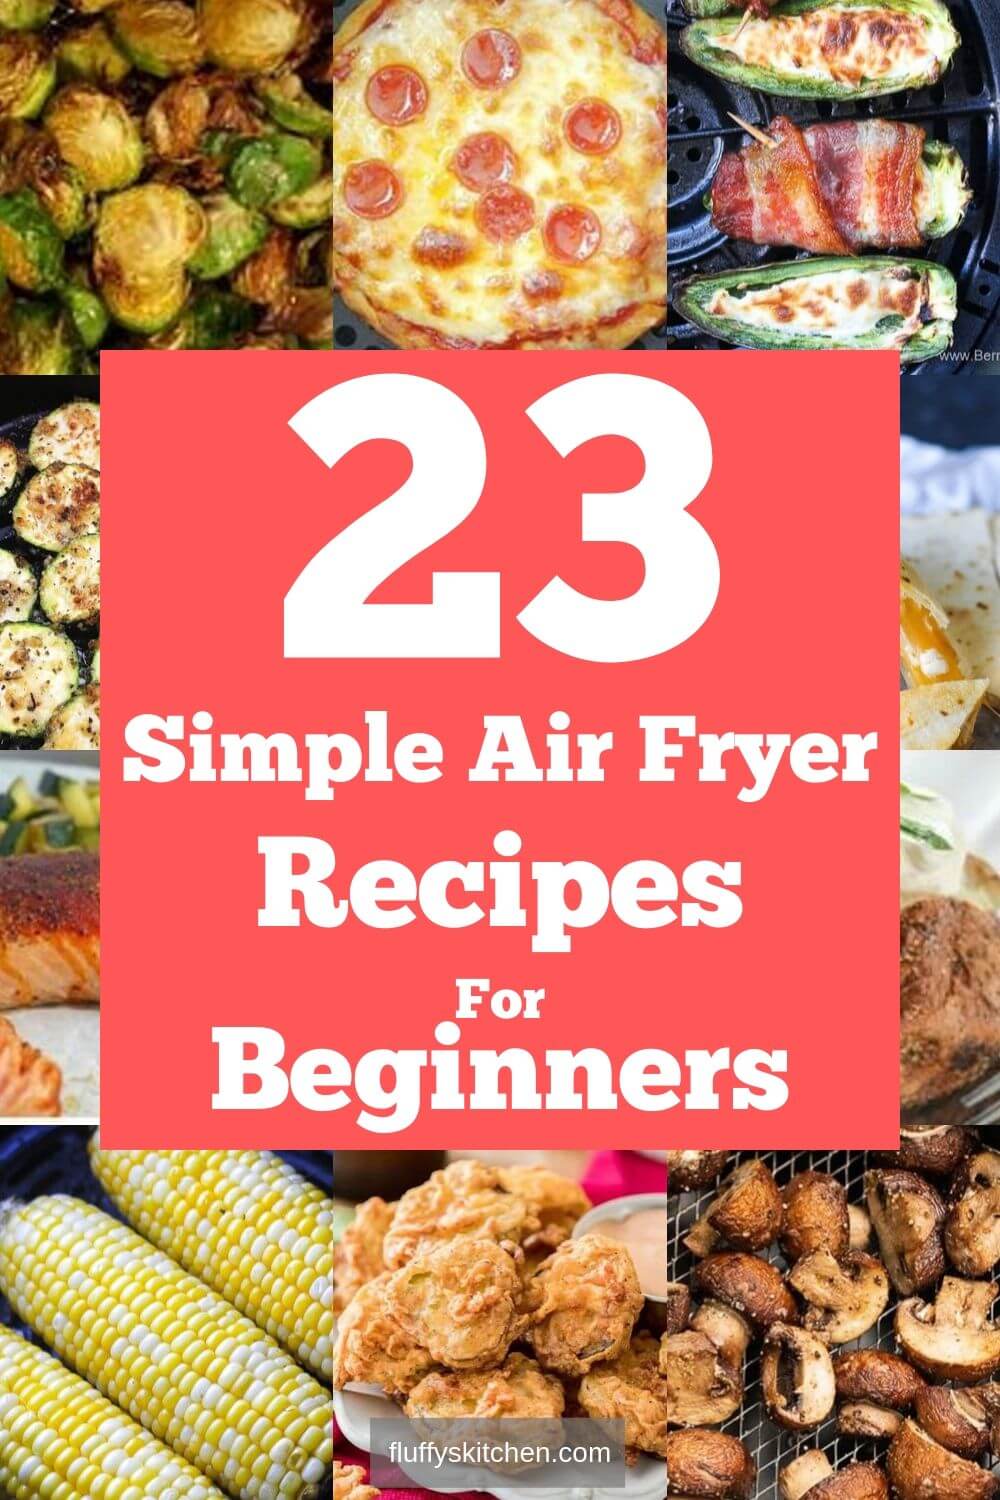 https://fluffyskitchen.com/wp-content/uploads/2019/09/23-simple-air-fryer-recipes-for-beginners.jpg